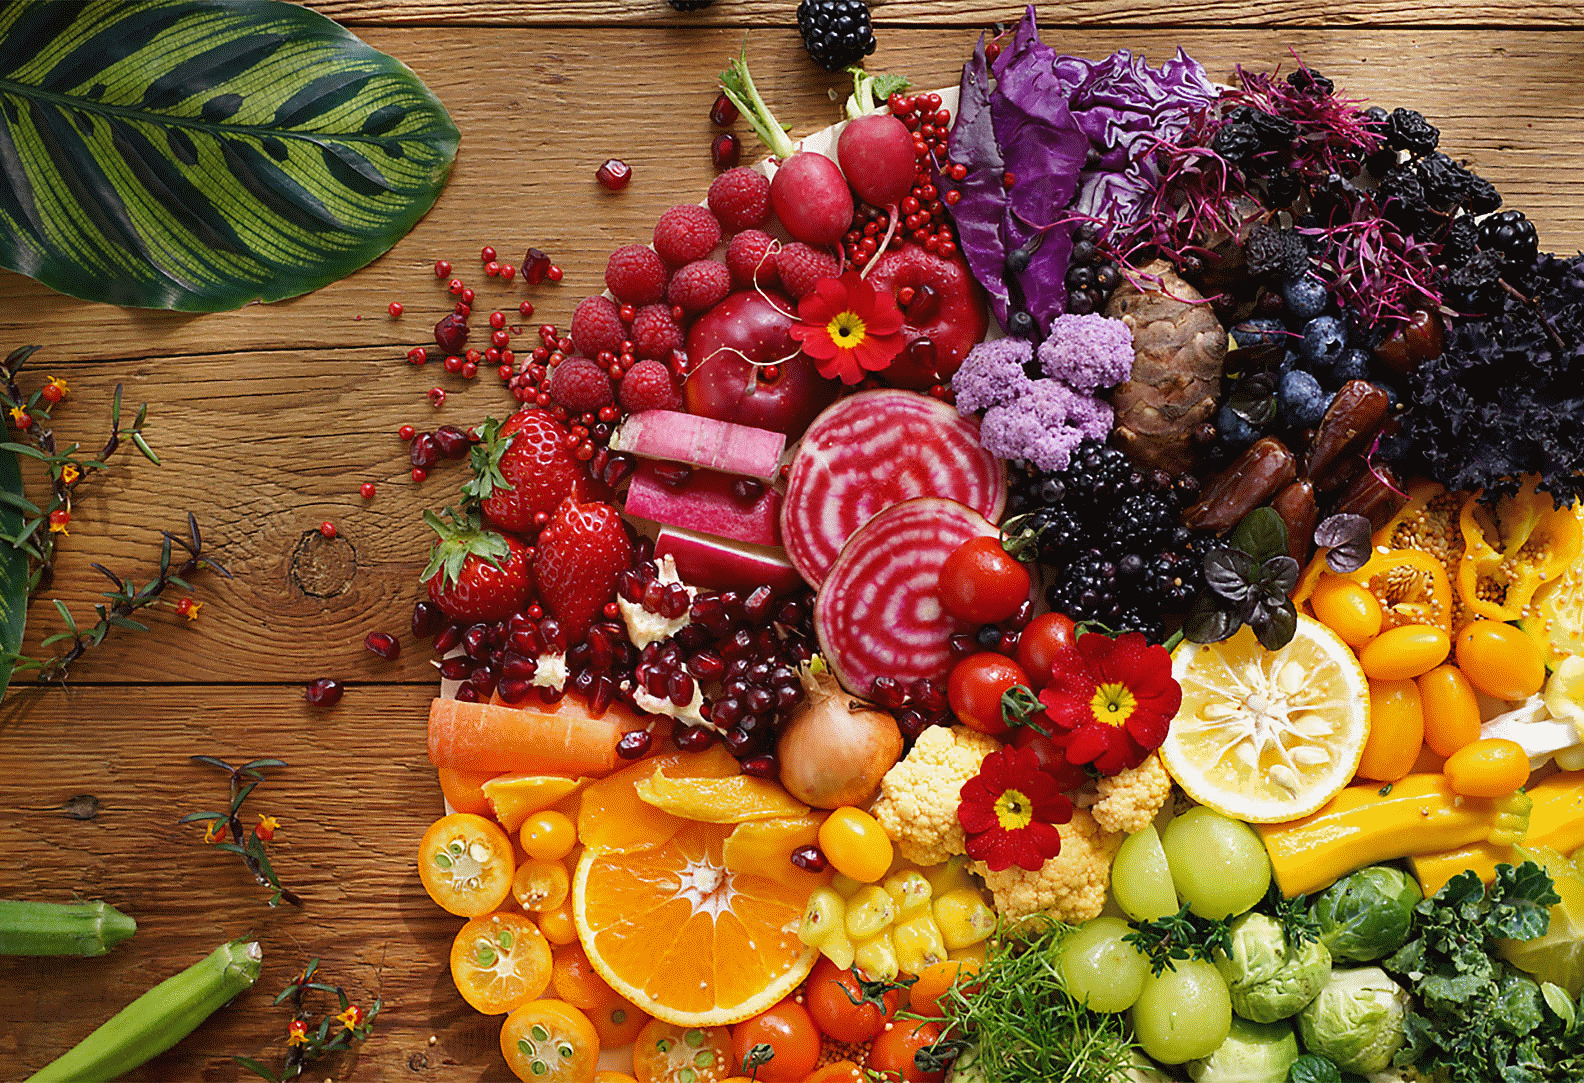 Slika barvite zelenjave in sadja, posneta s tem objektivom pri visoki ločljivosti na celotni sliki.